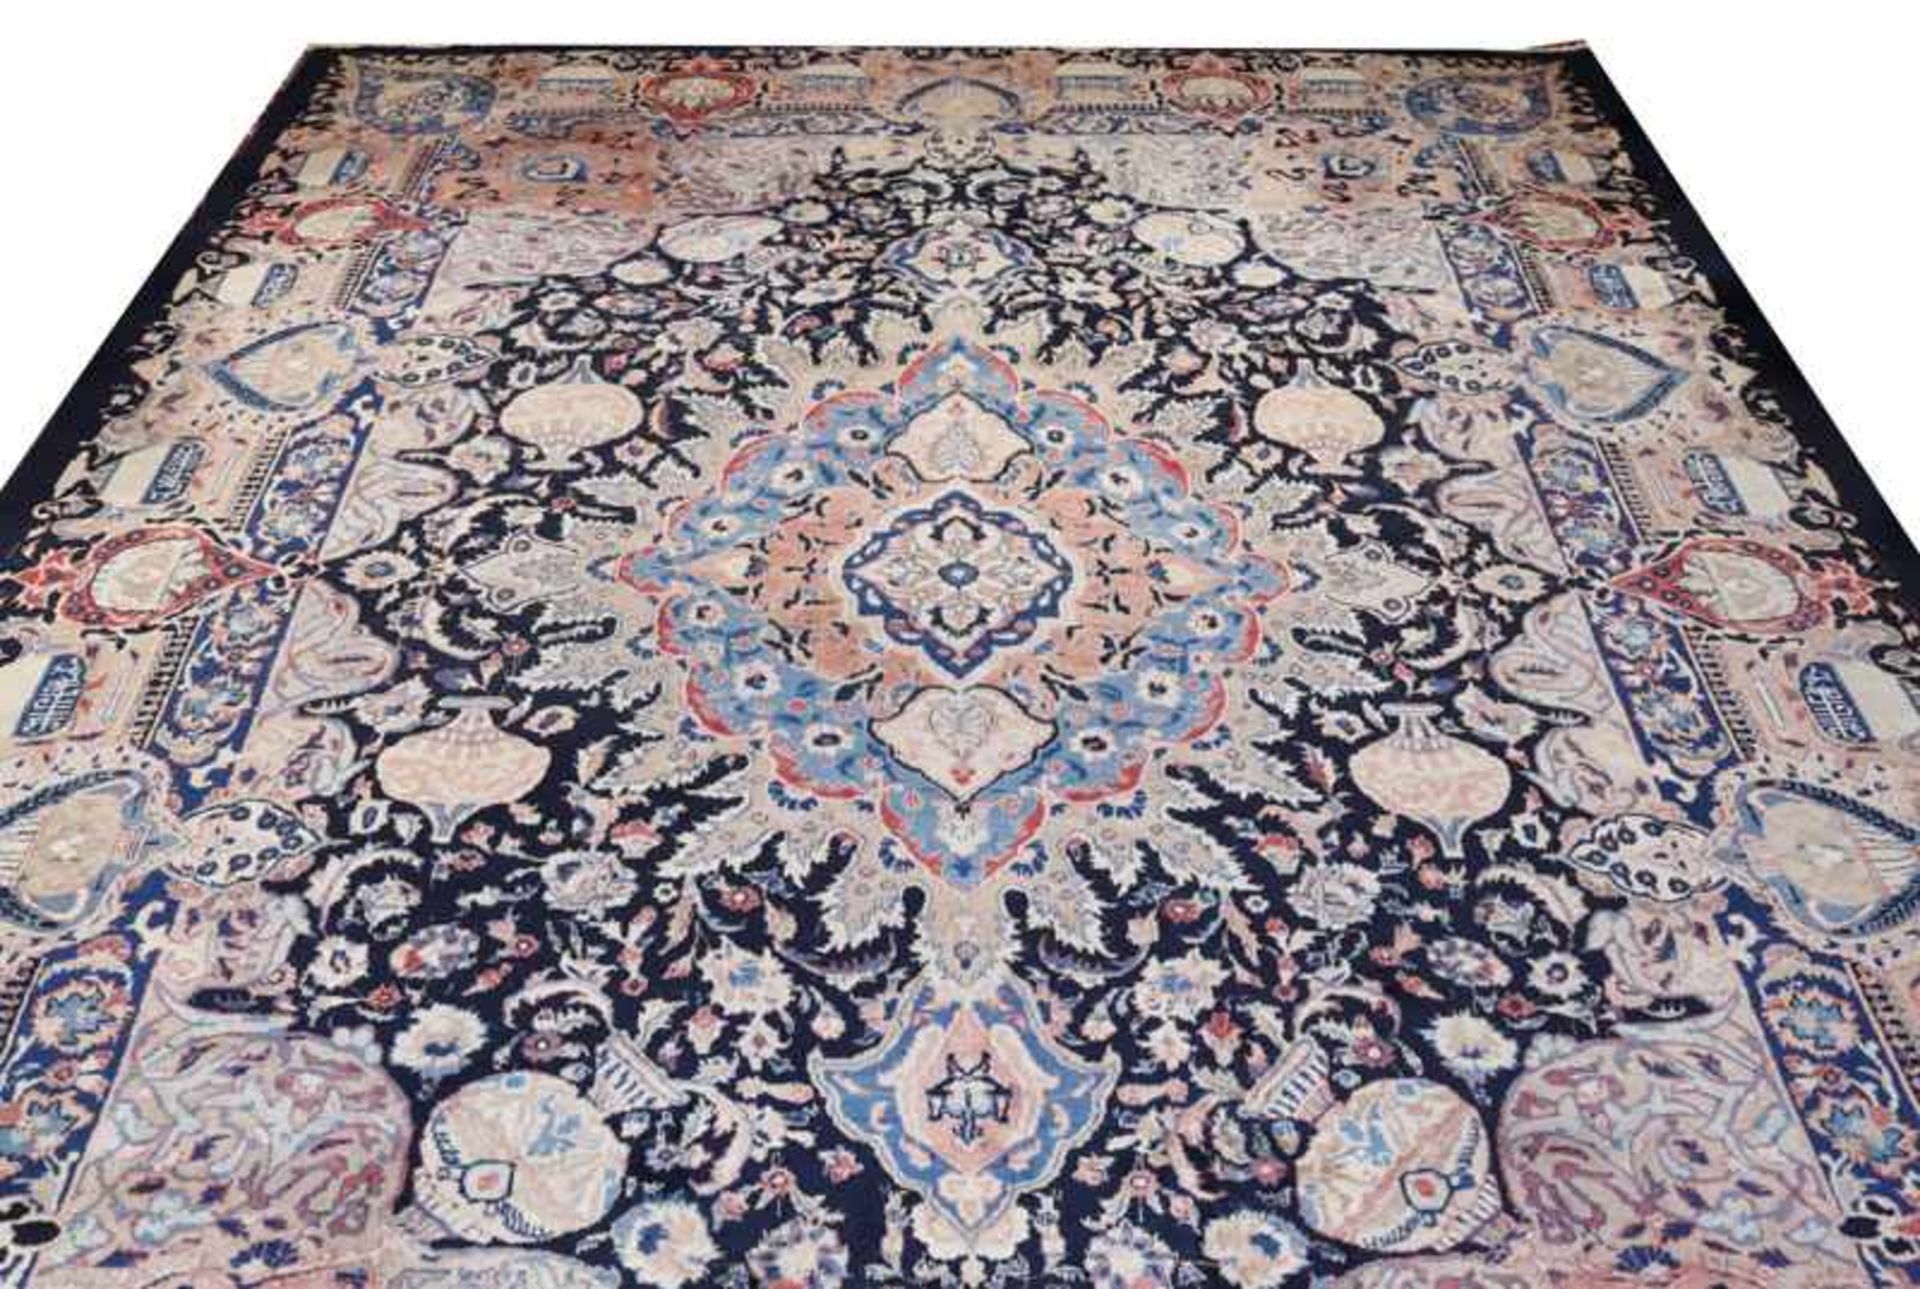 Teppich, Kaschmar, Persien, schwarz/bunt, 375 cm x 290 cm, leichte Gebrauchsspuren